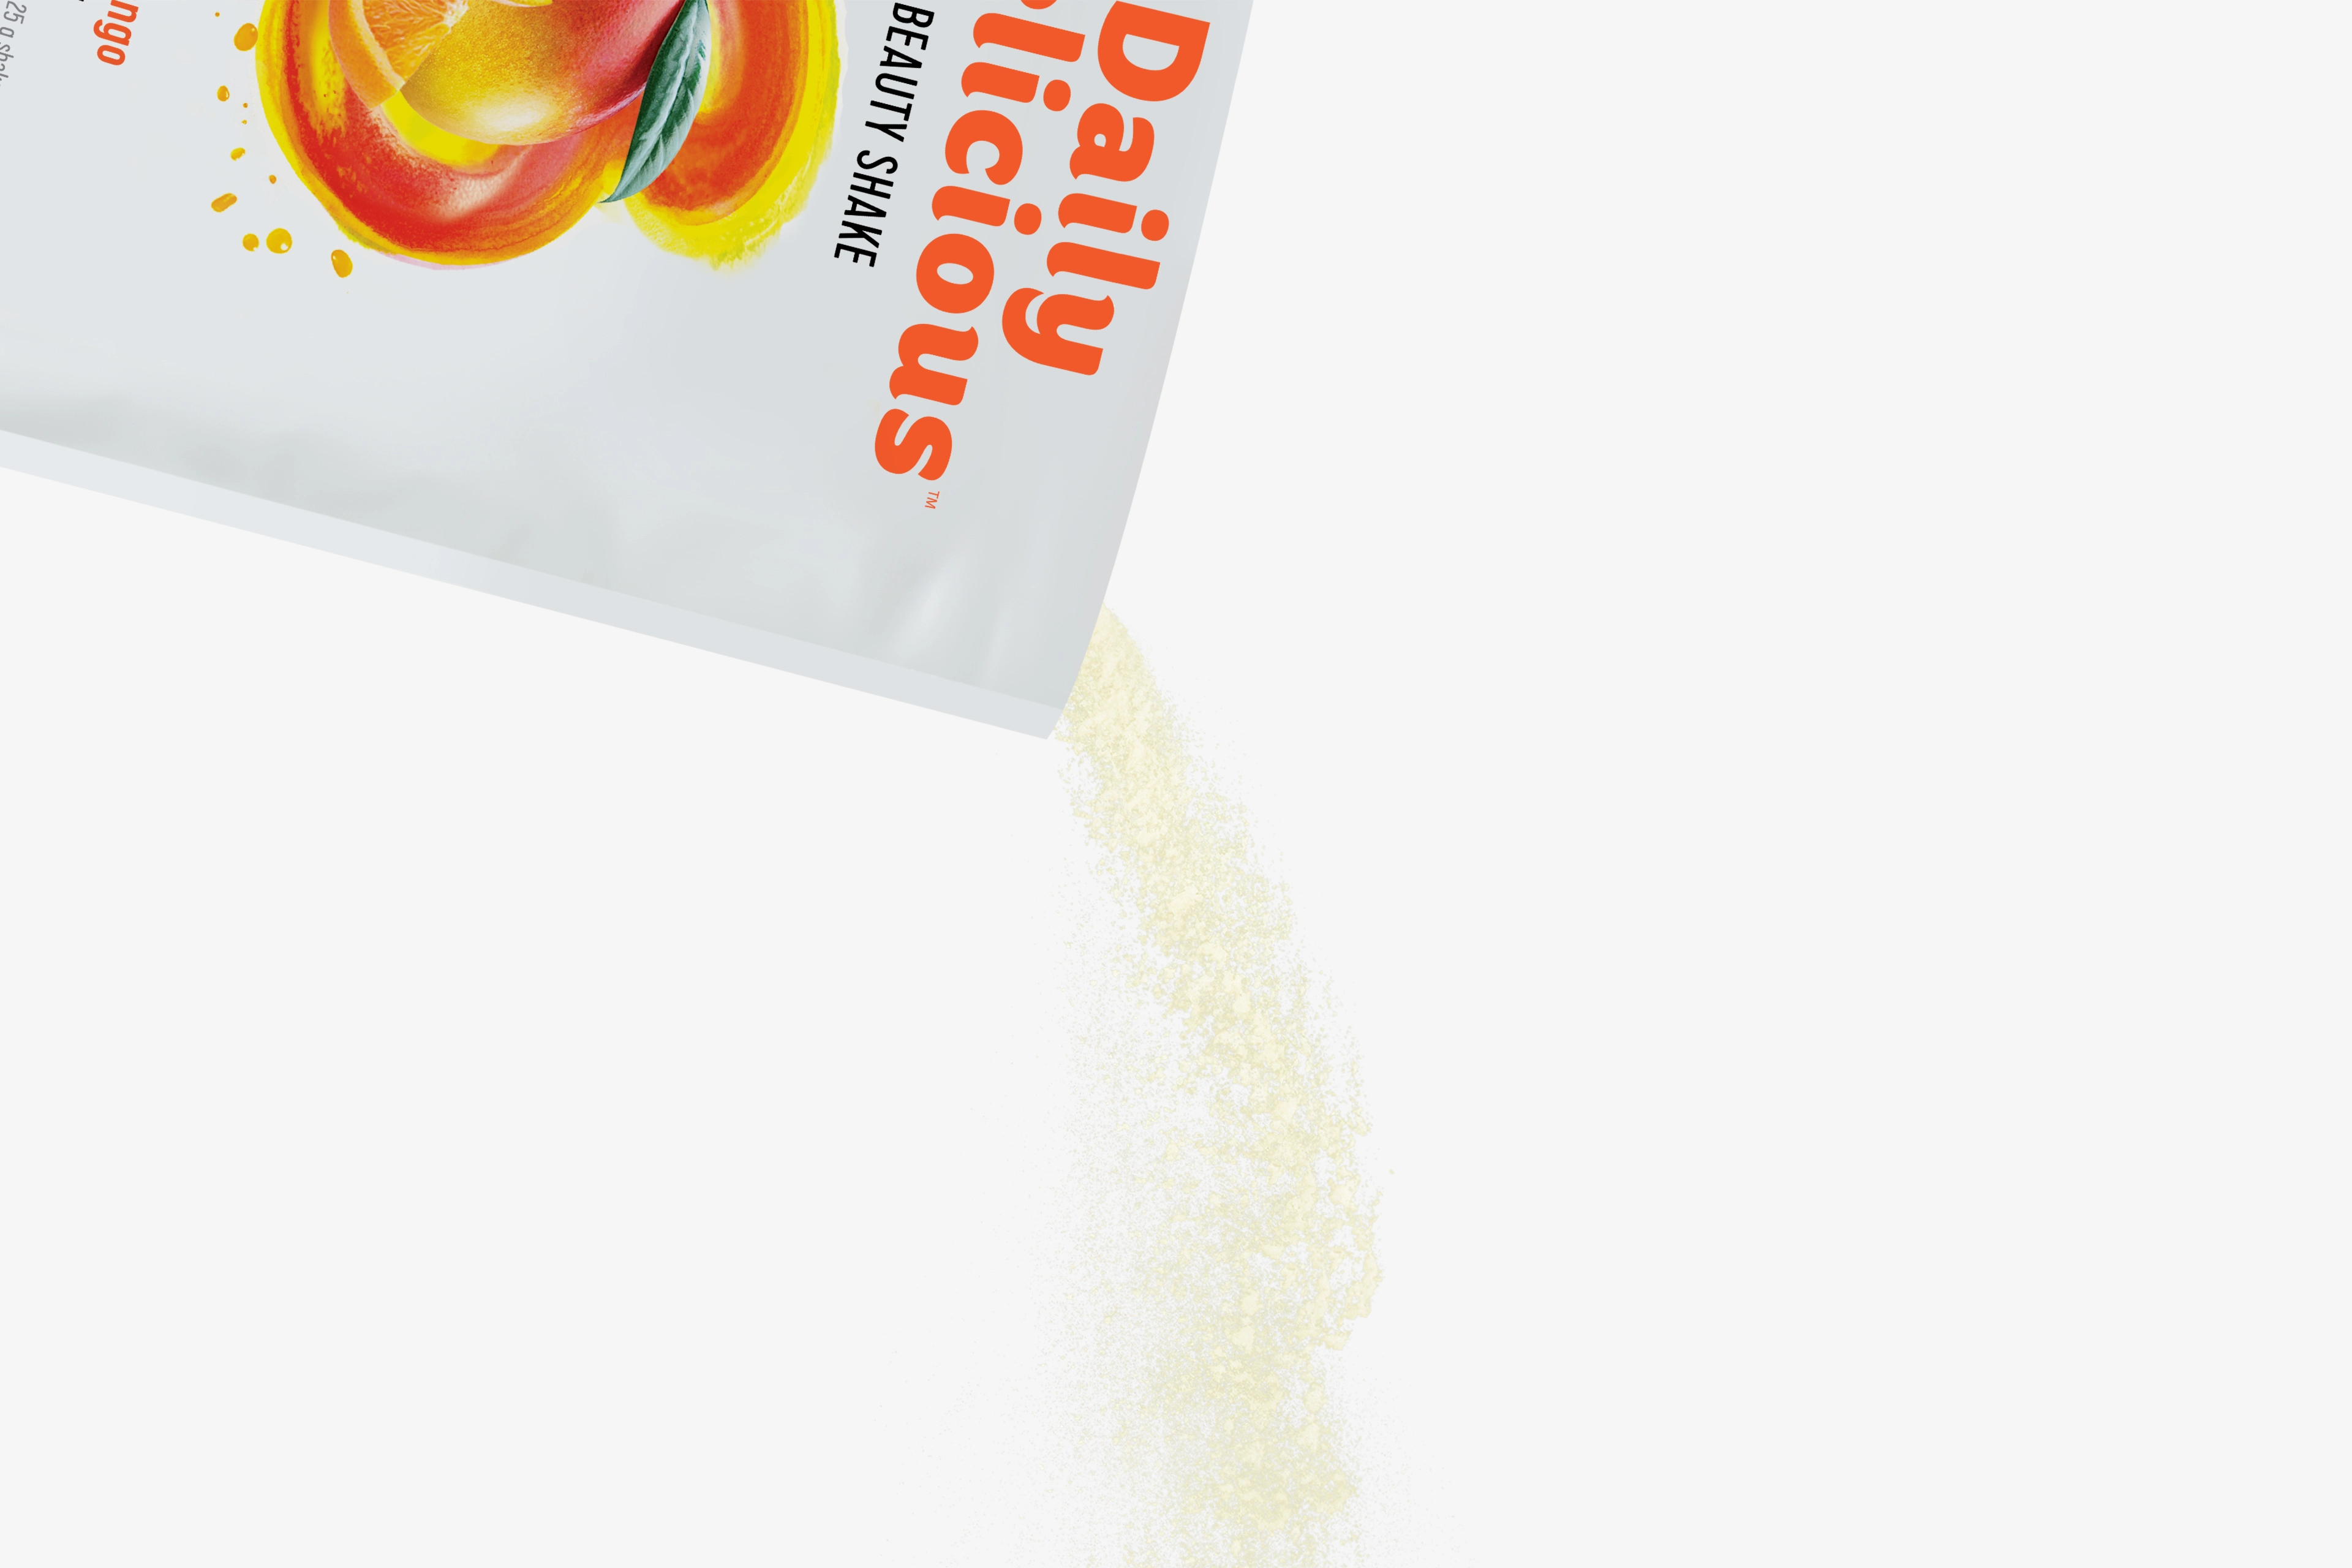 Daily Delicious Beauty Shake s příchutí pomeranč-mango (211800)